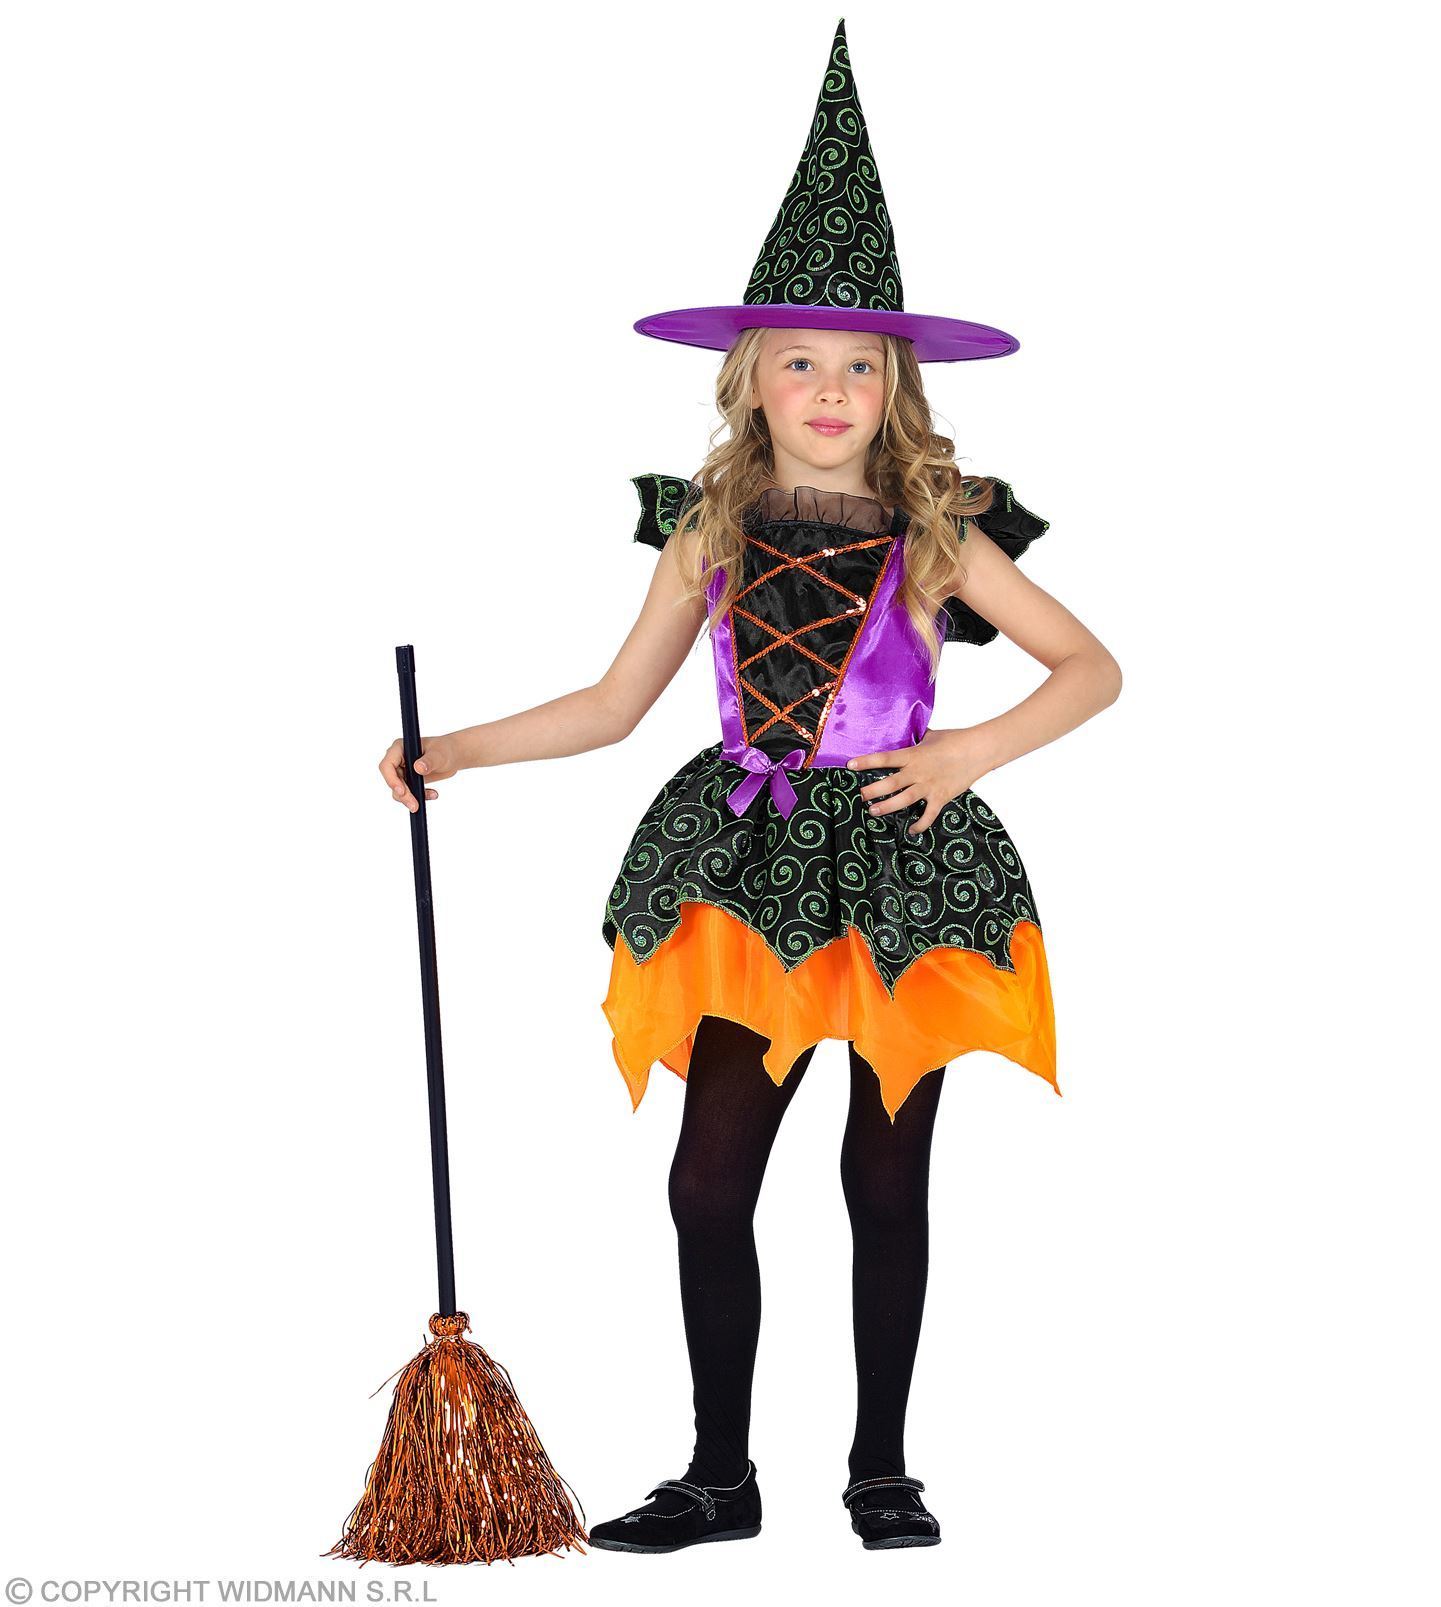 Heksen jurkje met hoed voor meisje kostuum in prachtige kleuren Halloween